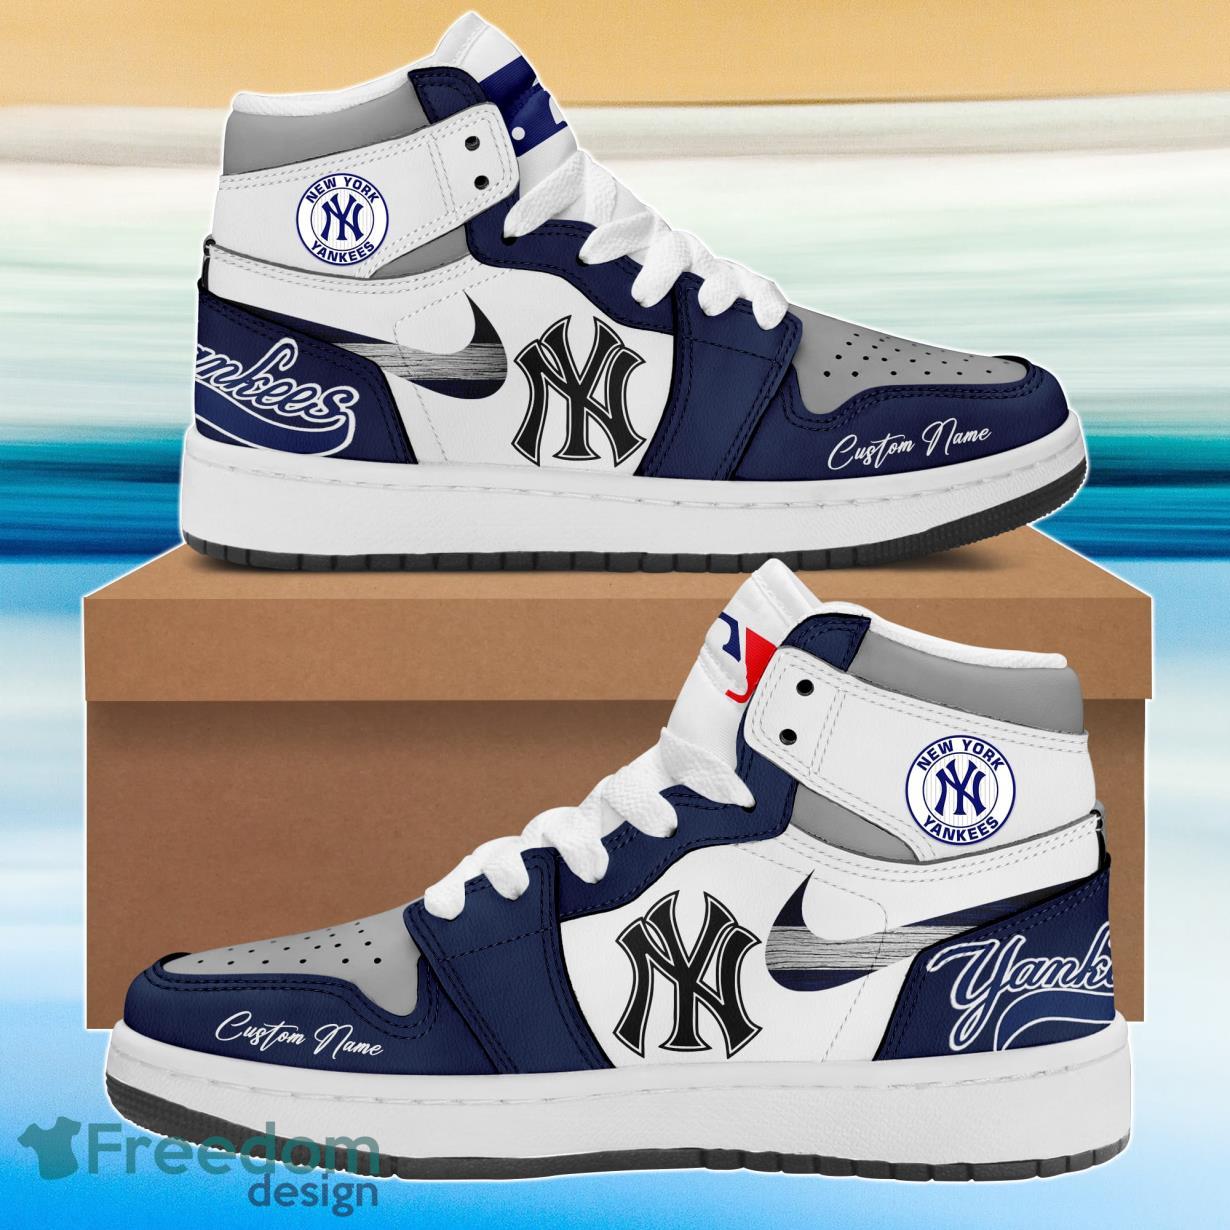 New York Yankees For Fans Air Jordan 11 Shoes